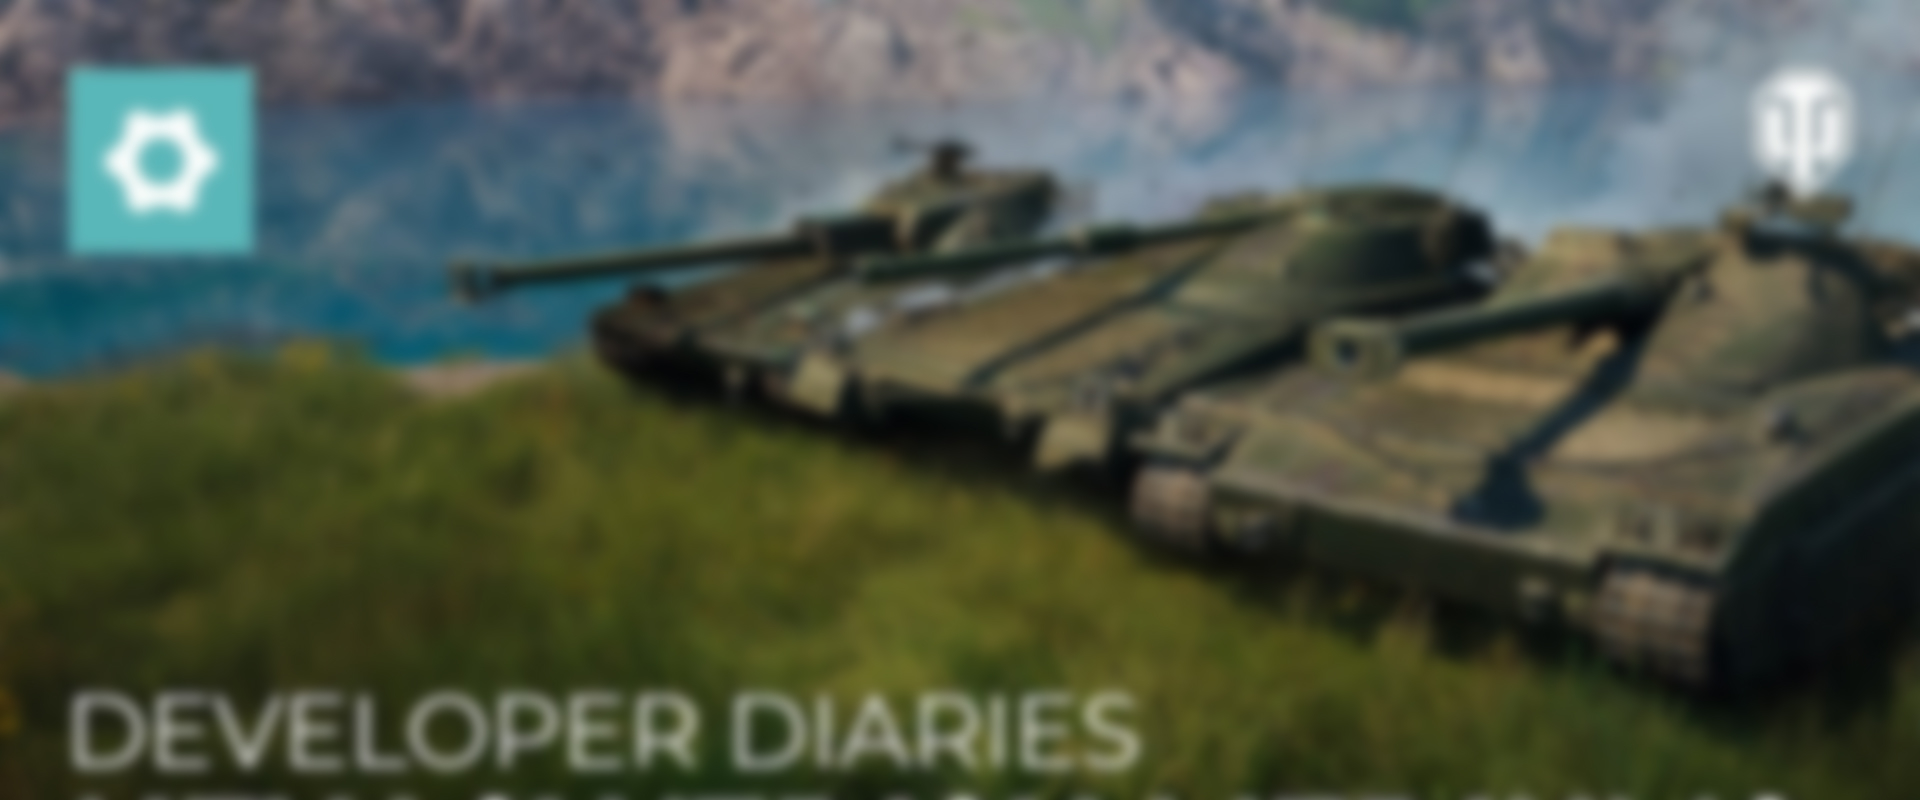 Egyenesen a fejlesztőktől: Részletes bemutató a svéd közepes tankokról!